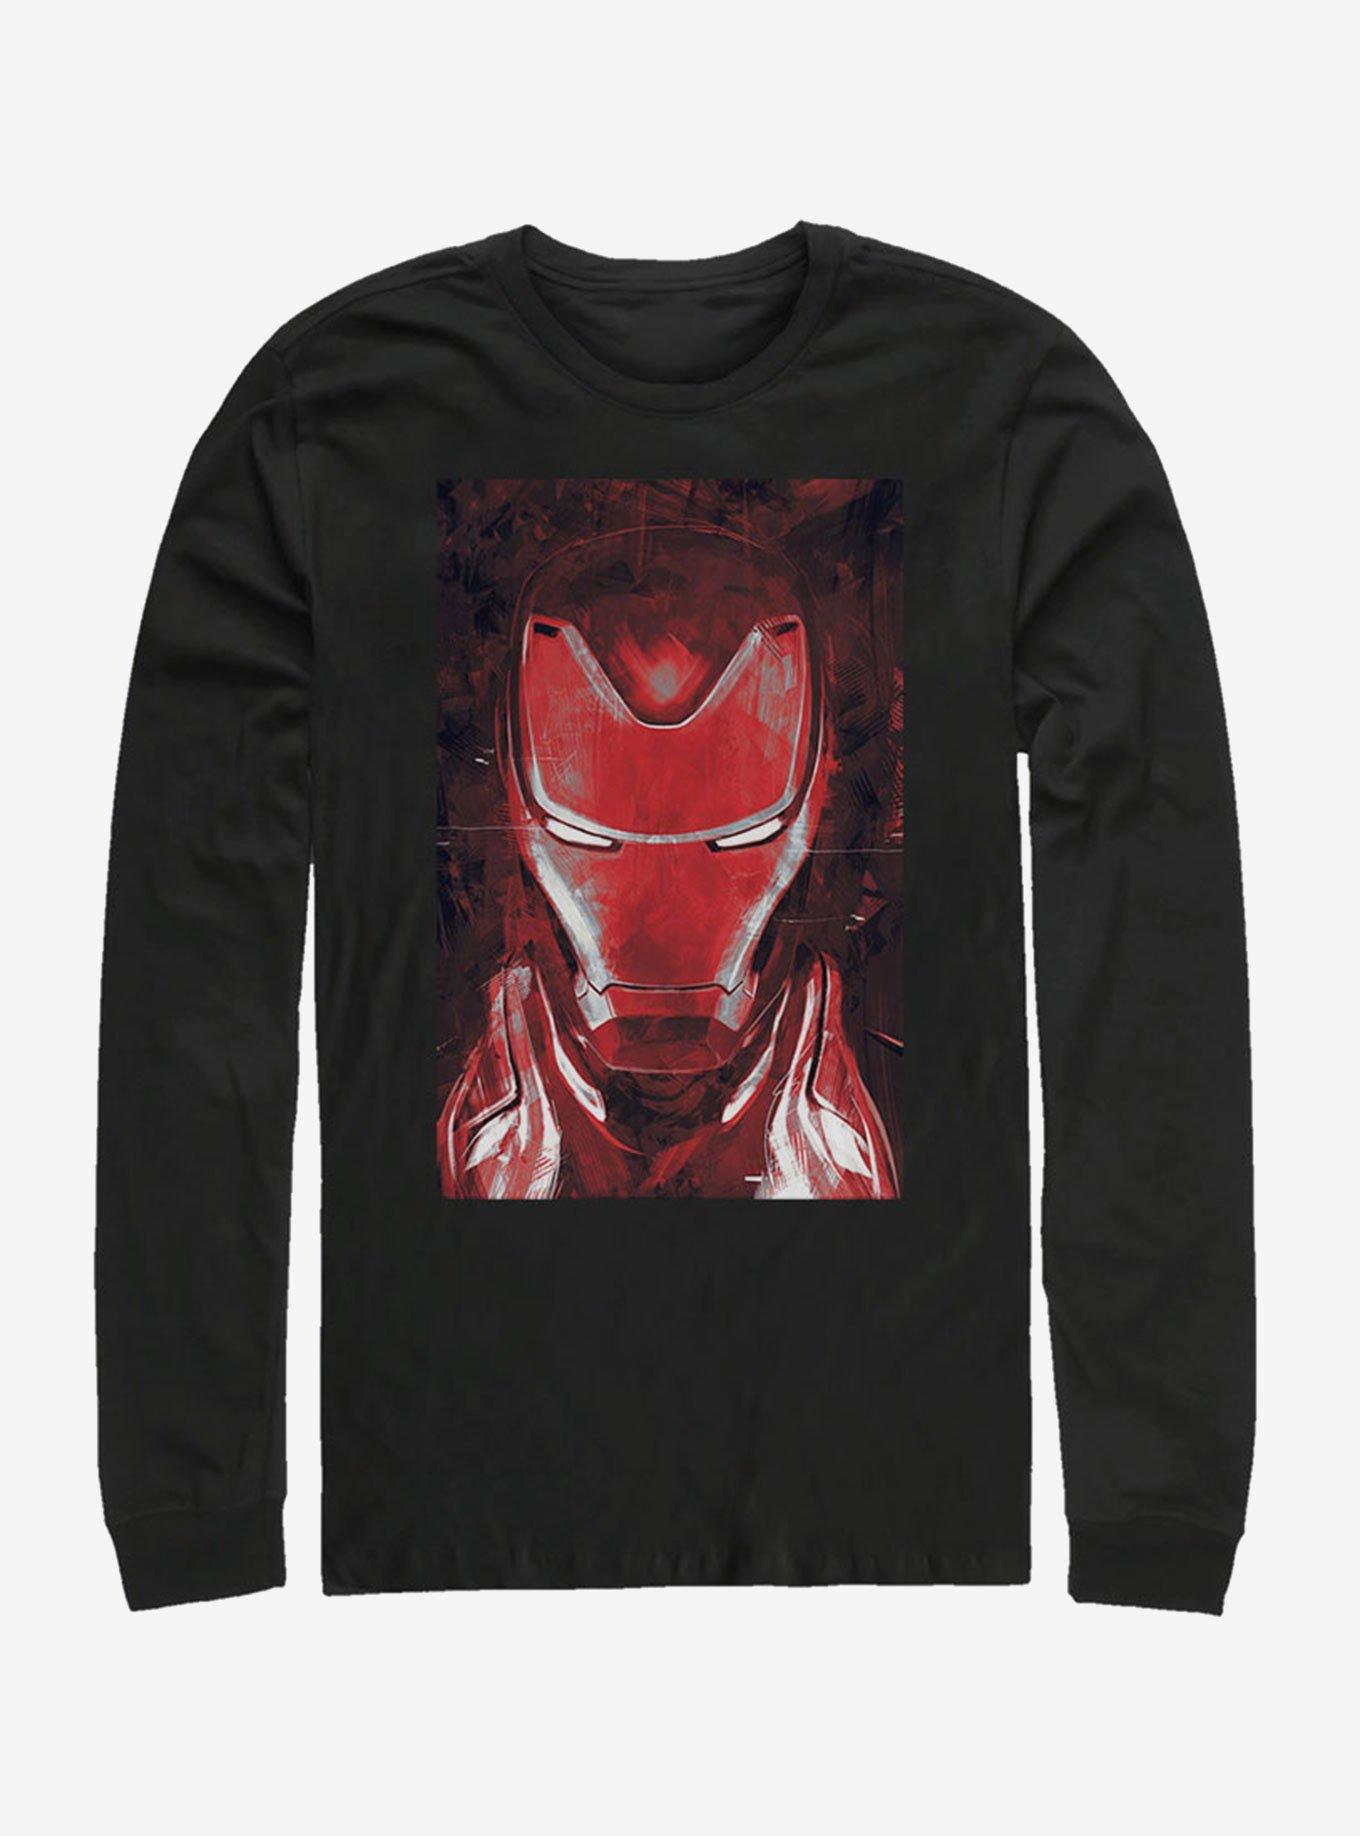 Marvel Avengers: Endgame Red Iron Man Long-Sleeve T-Shirt | Hot Topic